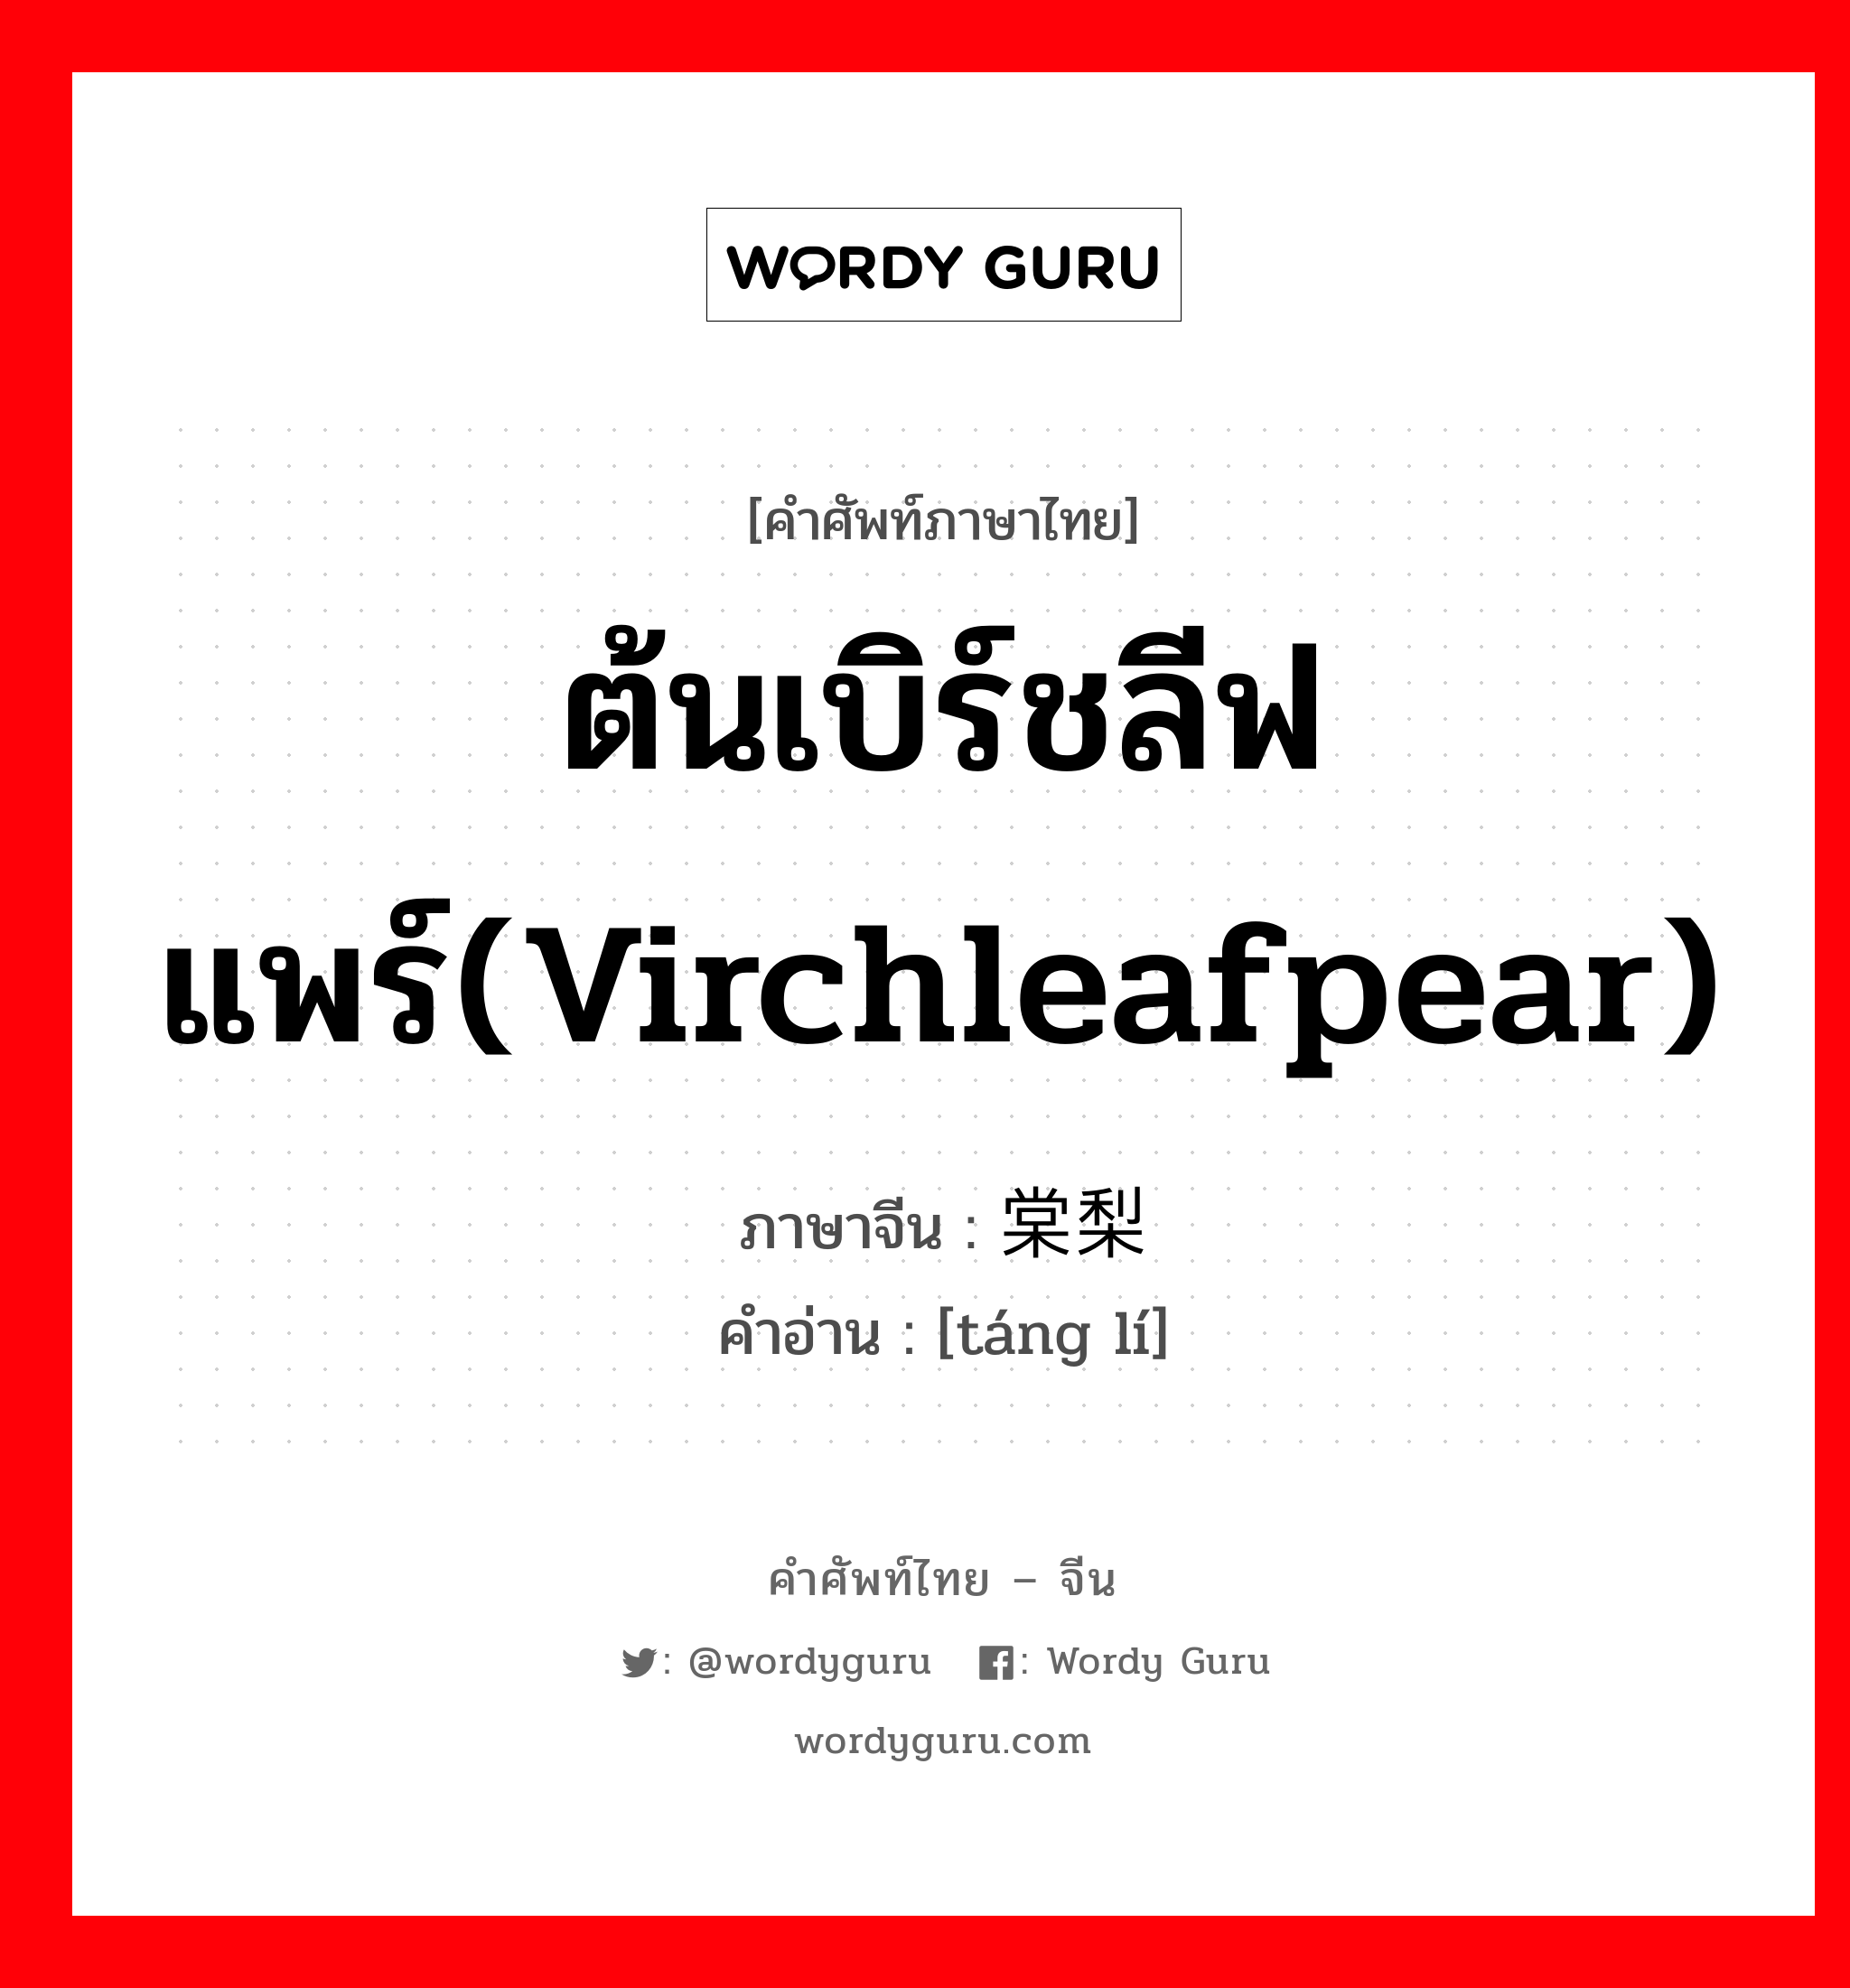 ต้นเบิร์ชลีฟแพร์(virchleafpear) ภาษาจีนคืออะไร, คำศัพท์ภาษาไทย - จีน ต้นเบิร์ชลีฟแพร์(virchleafpear) ภาษาจีน 棠梨 คำอ่าน [táng lí]